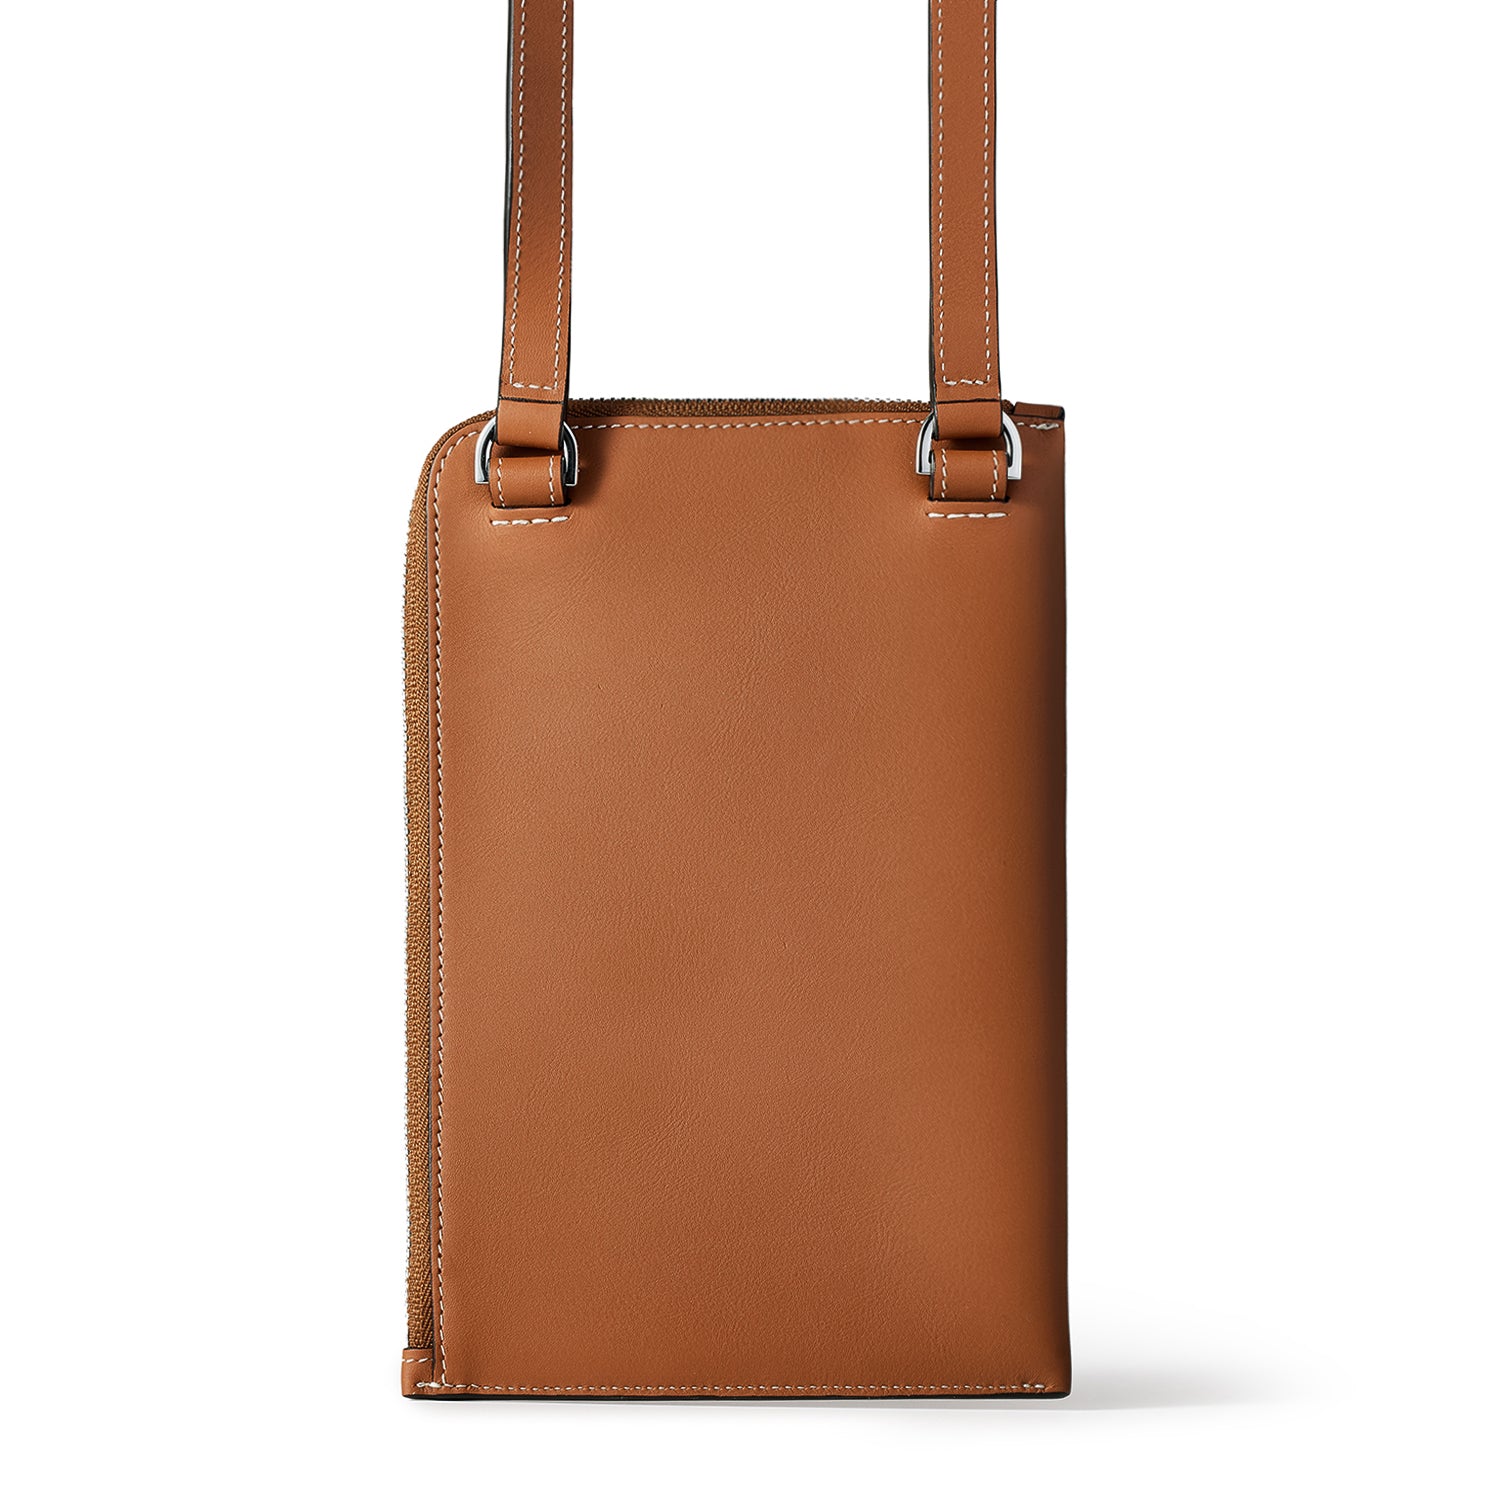 Riley shoulder bag in smooth leather